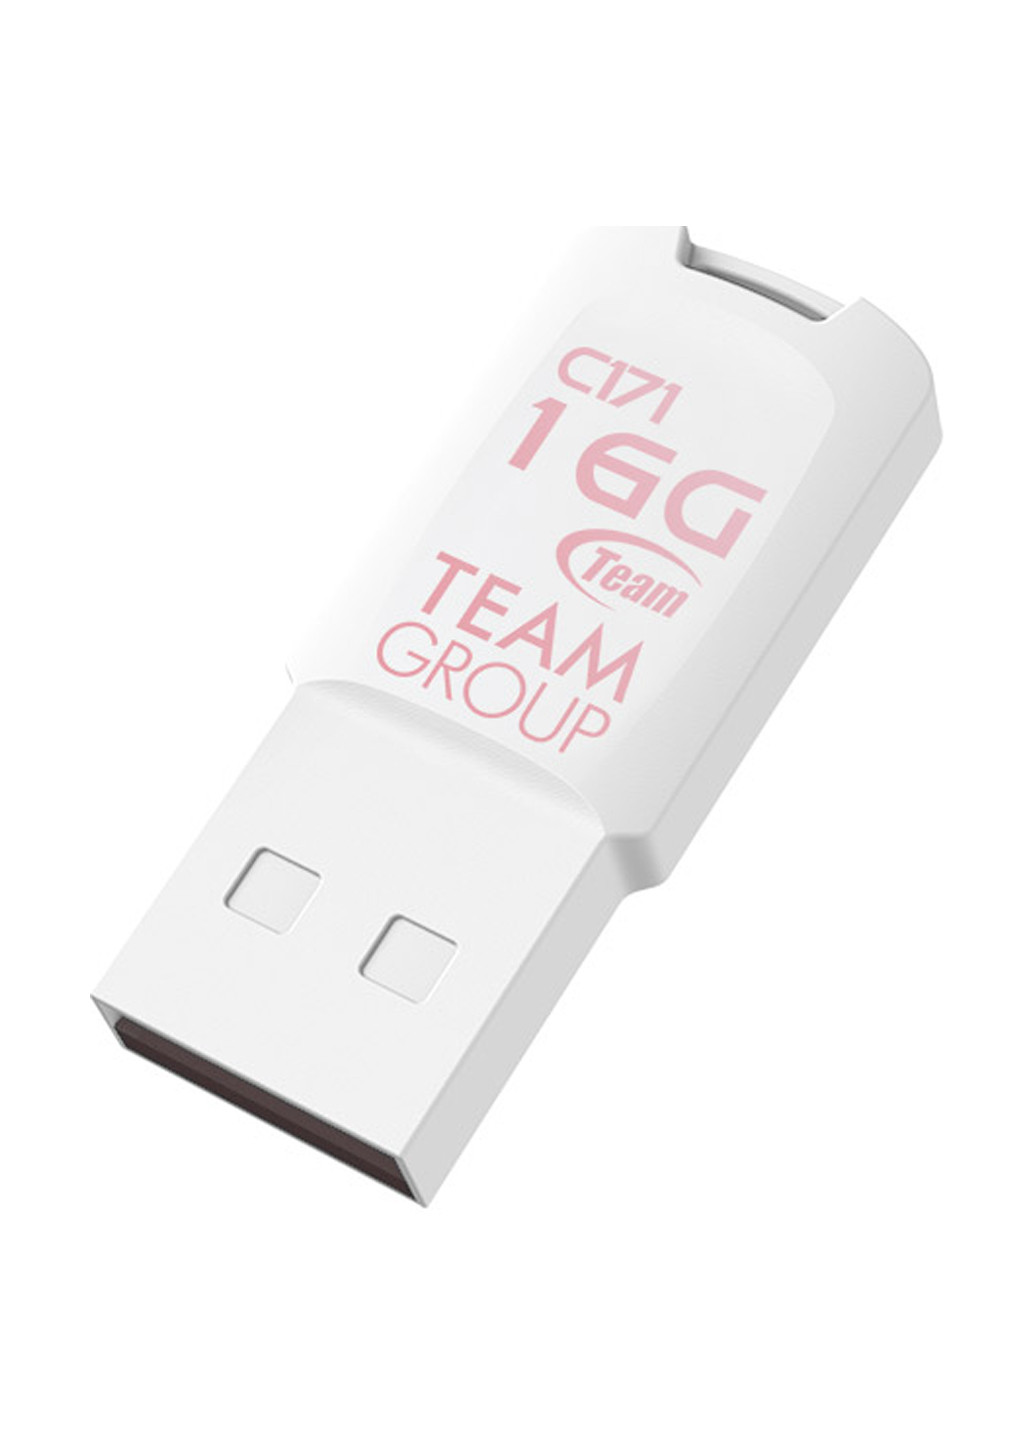 Флеш пам'ять USB C171 16GB White (TC17116GW01) Team флеш память usb team c171 16gb white (tc17116gw01) (134201744)